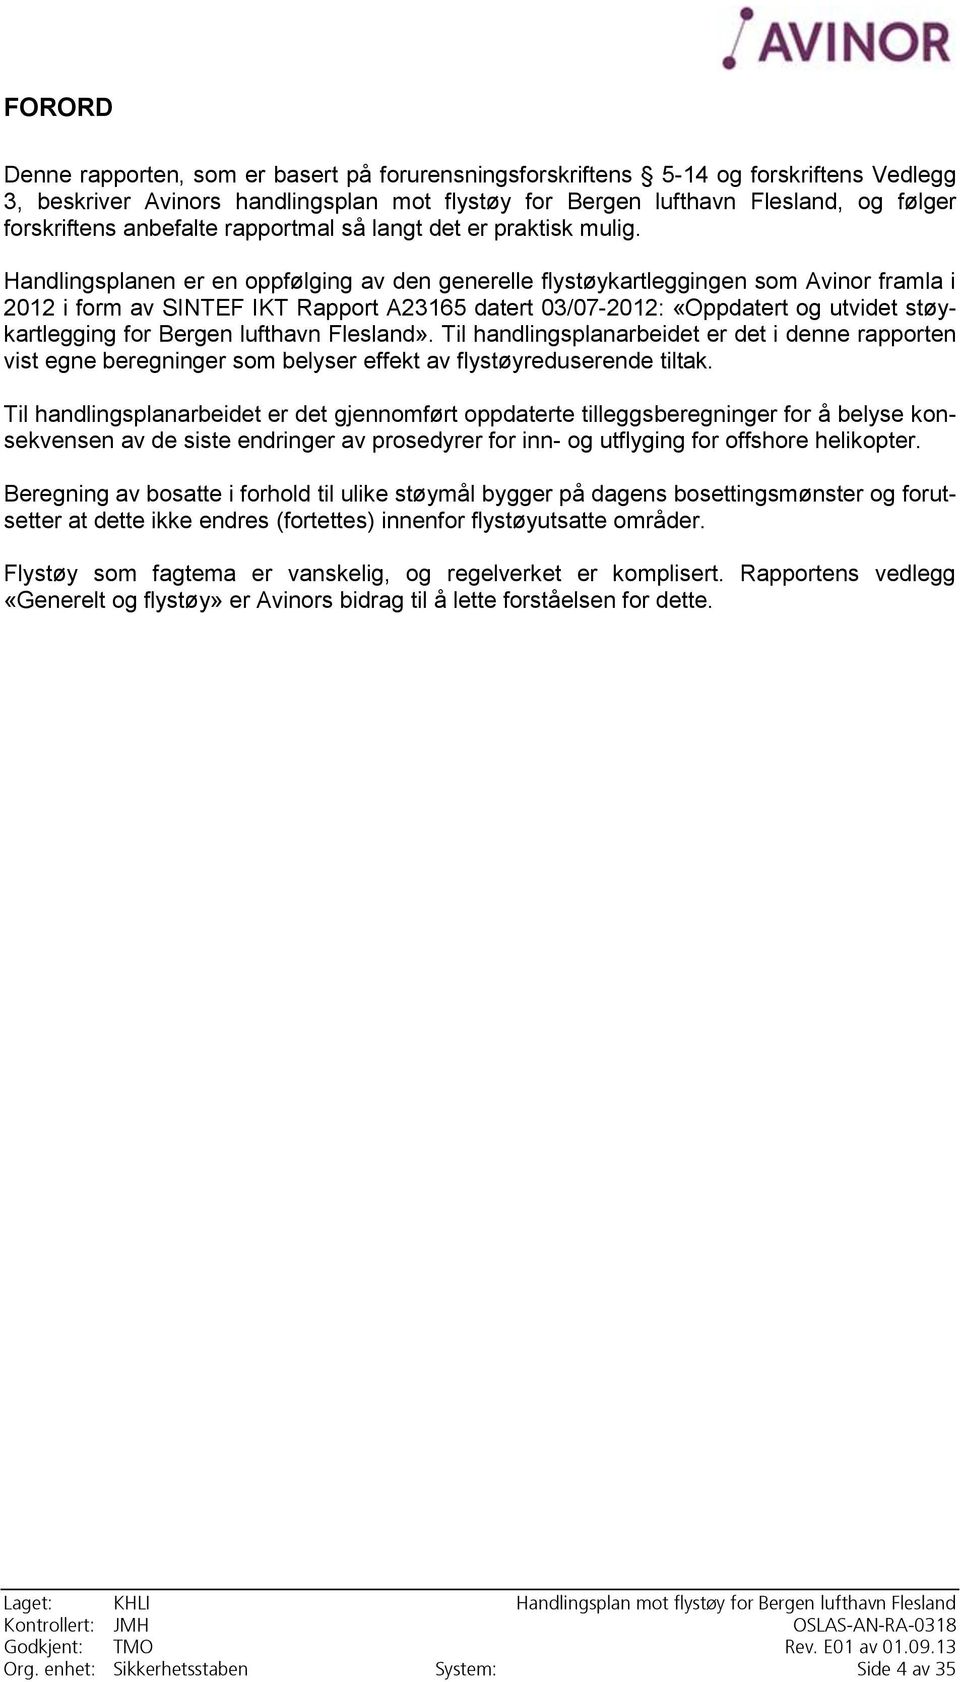 Handlingsplanen er en oppfølging av den generelle flystøykartleggingen som Avinor framla i 2012 i form av SINTEF IKT Rapport A23165 datert 03/07-2012: «Oppdatert og utvidet støykartlegging for Bergen